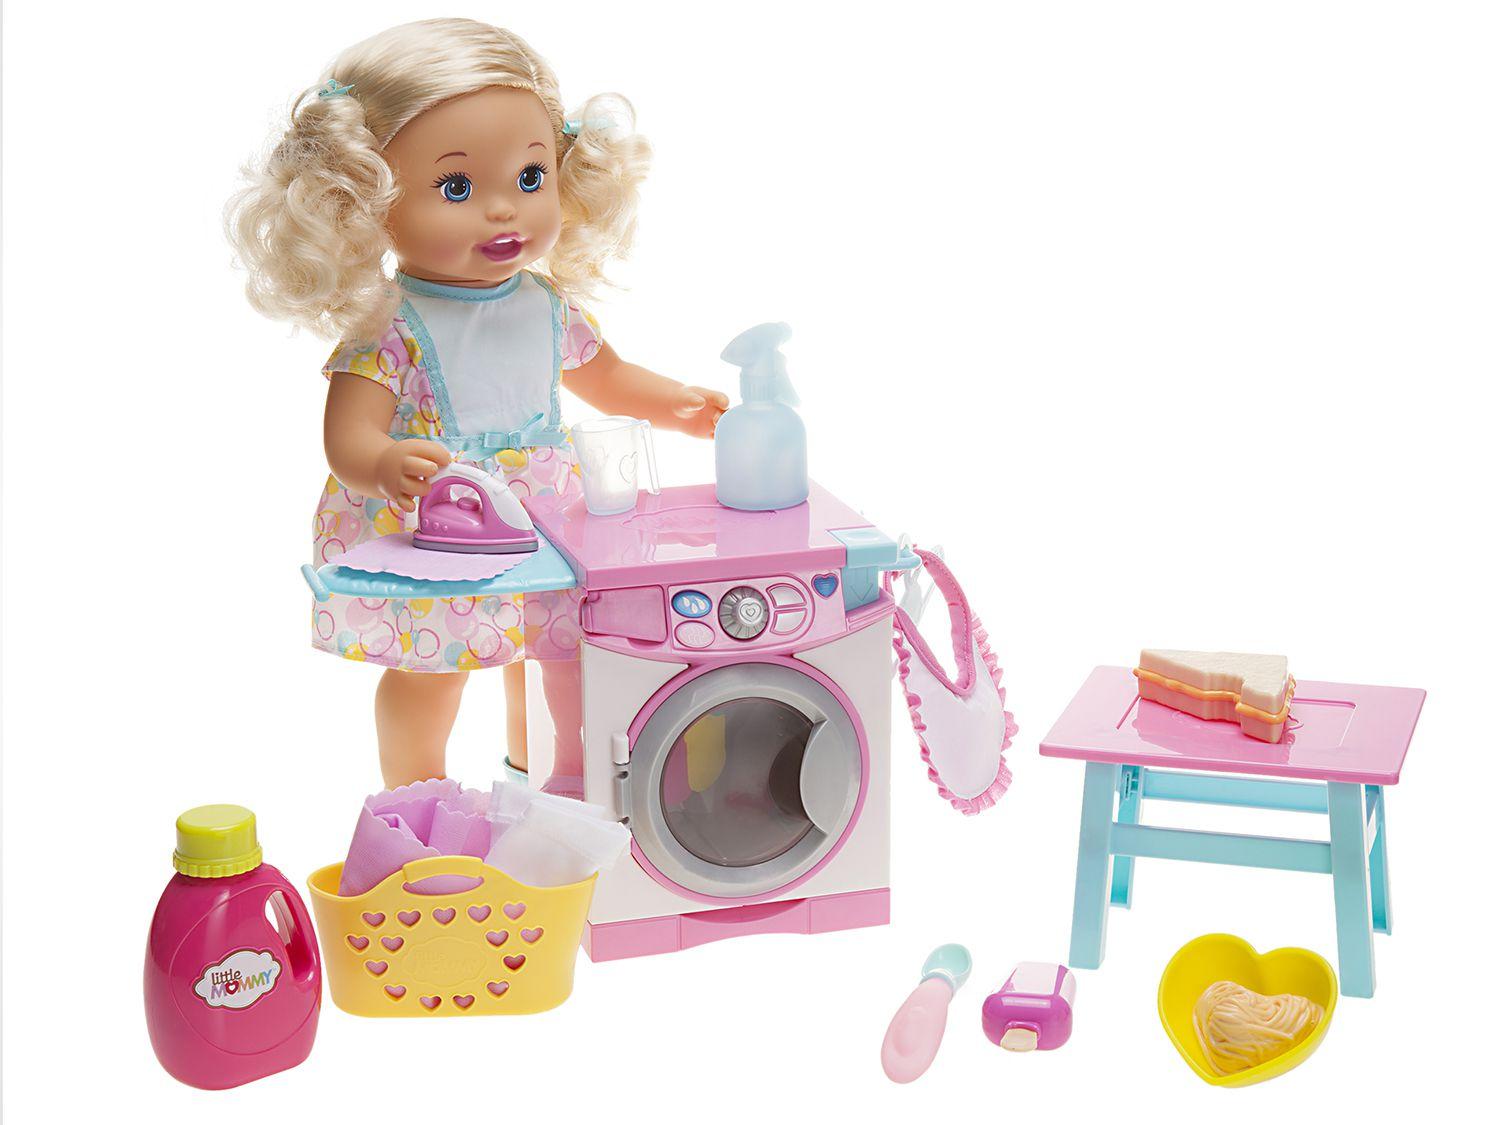 Boneca Little Mommy Hora de Comer e Lavar - FLC04 com Acessórios Mattel